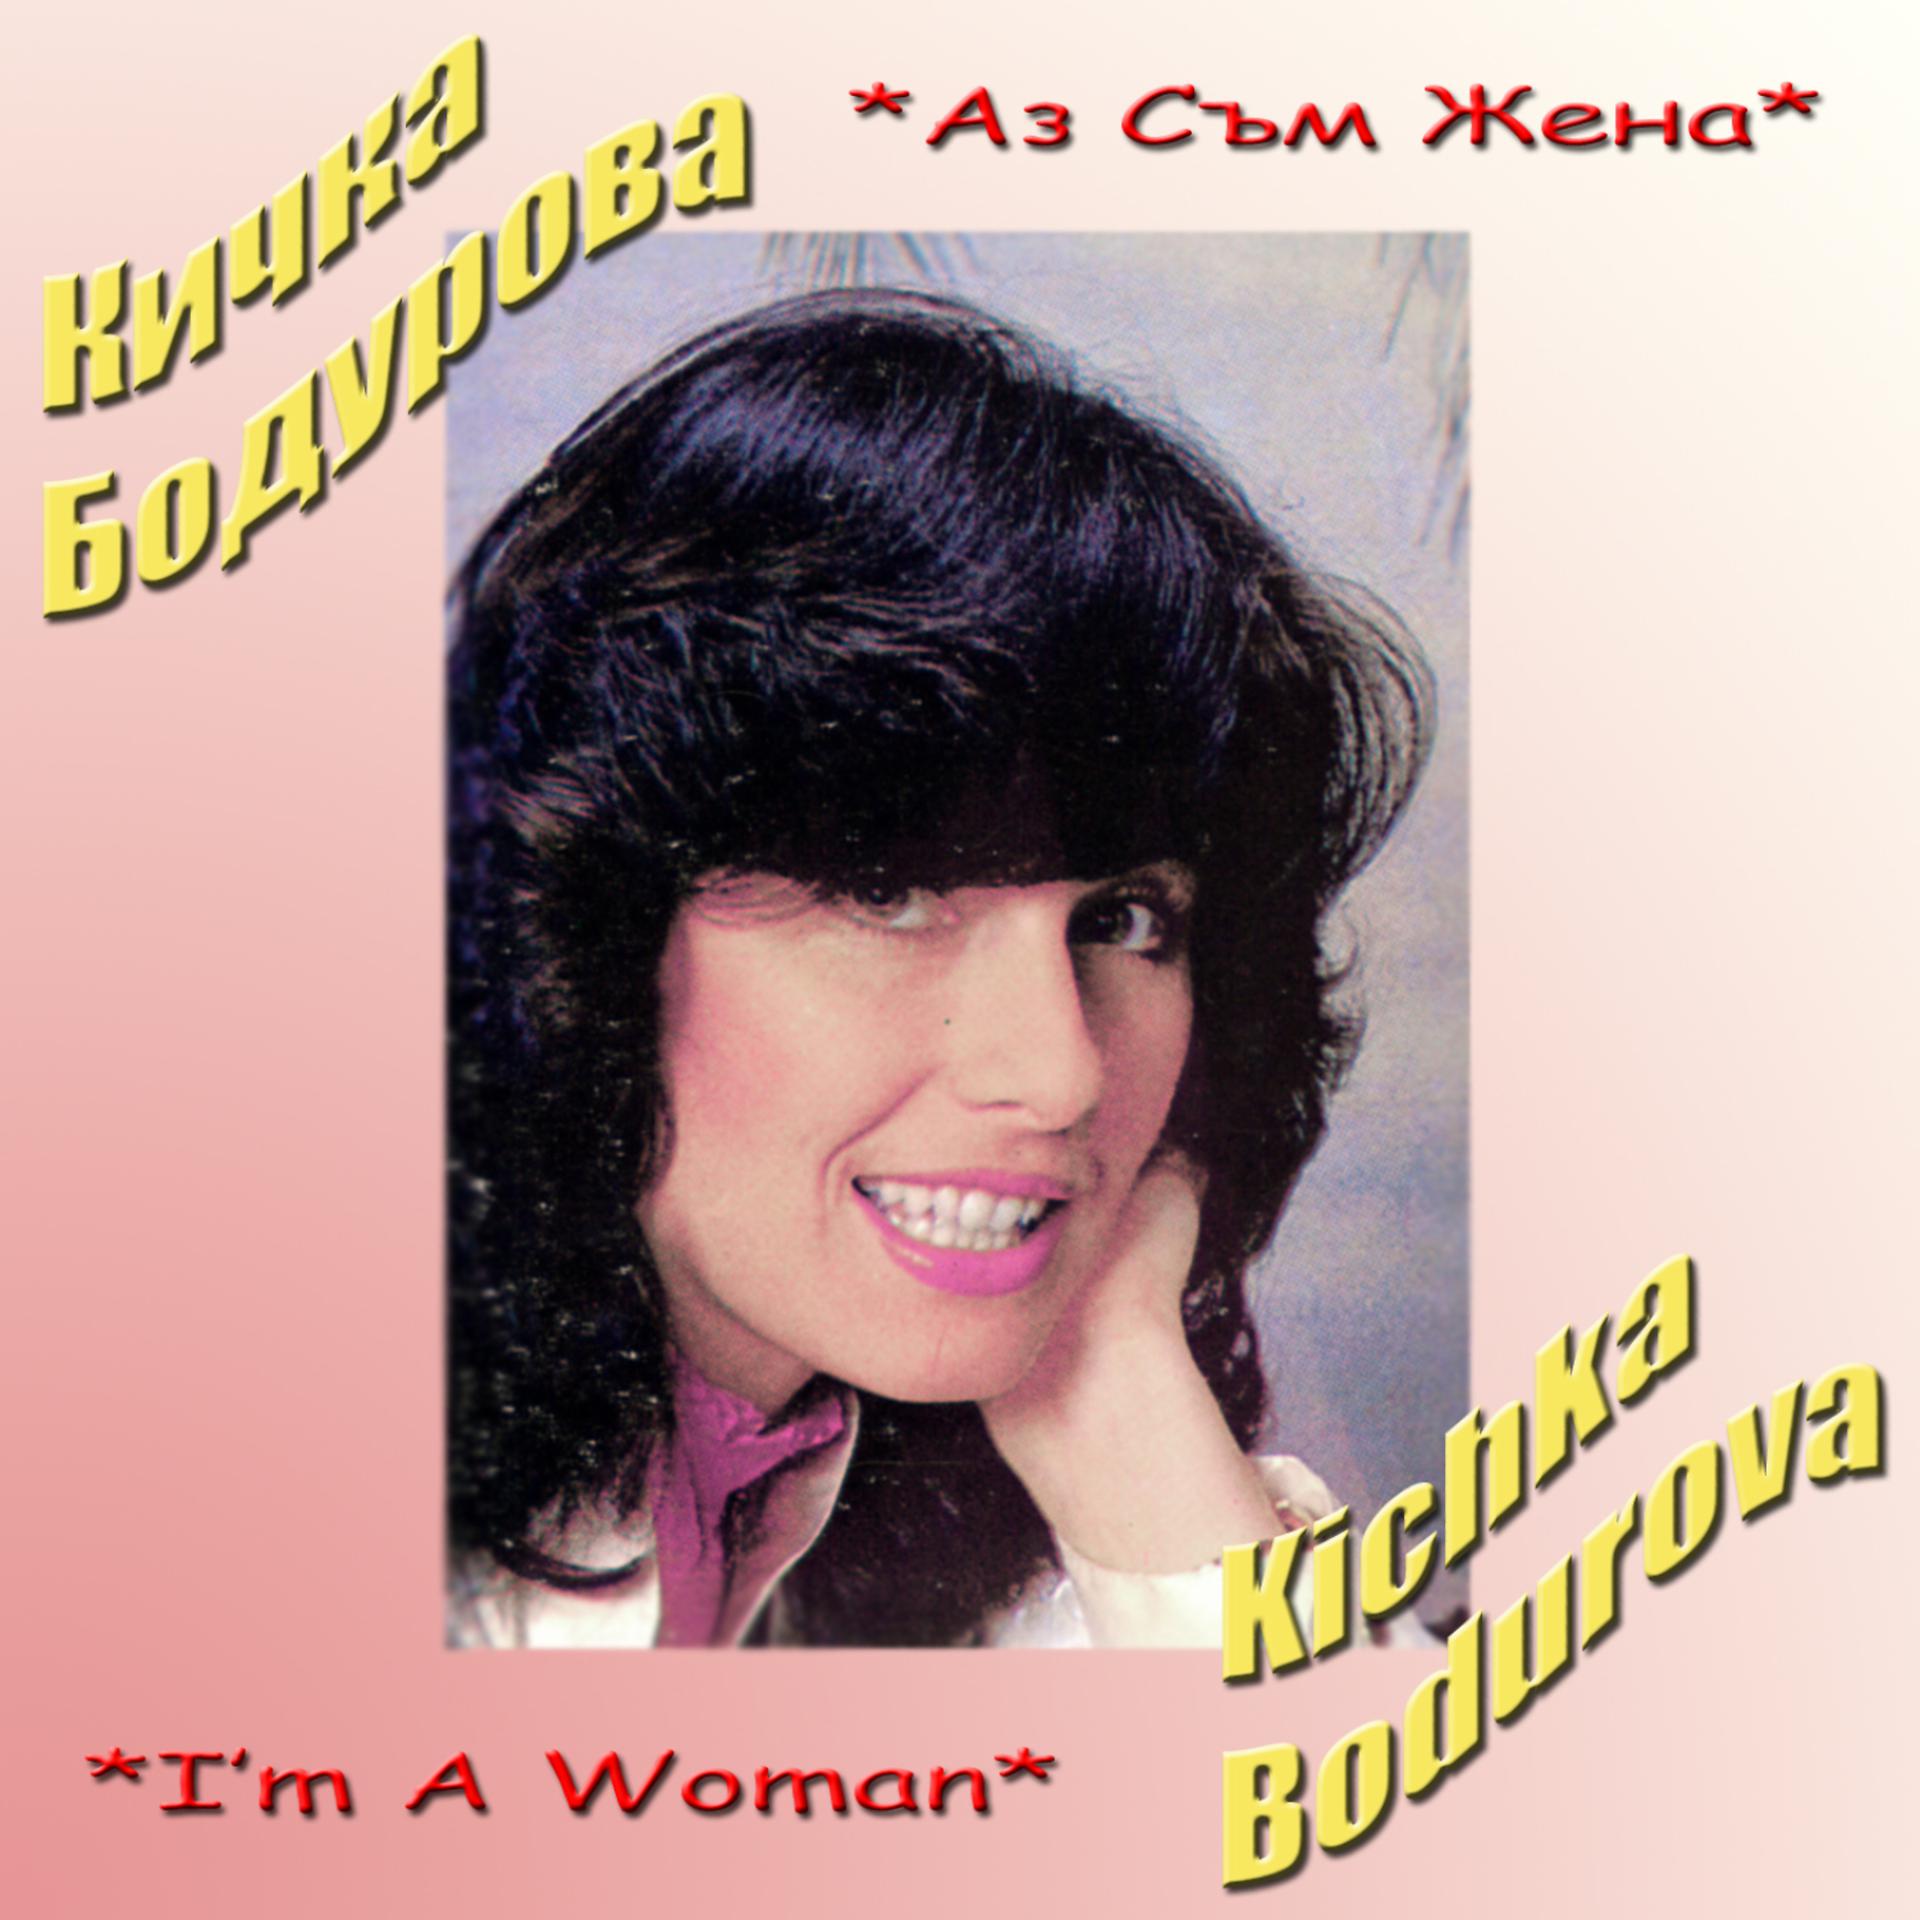 Песни про жену слушать. Kichka Bodurova. Певица блюз Италия большой кичкой.